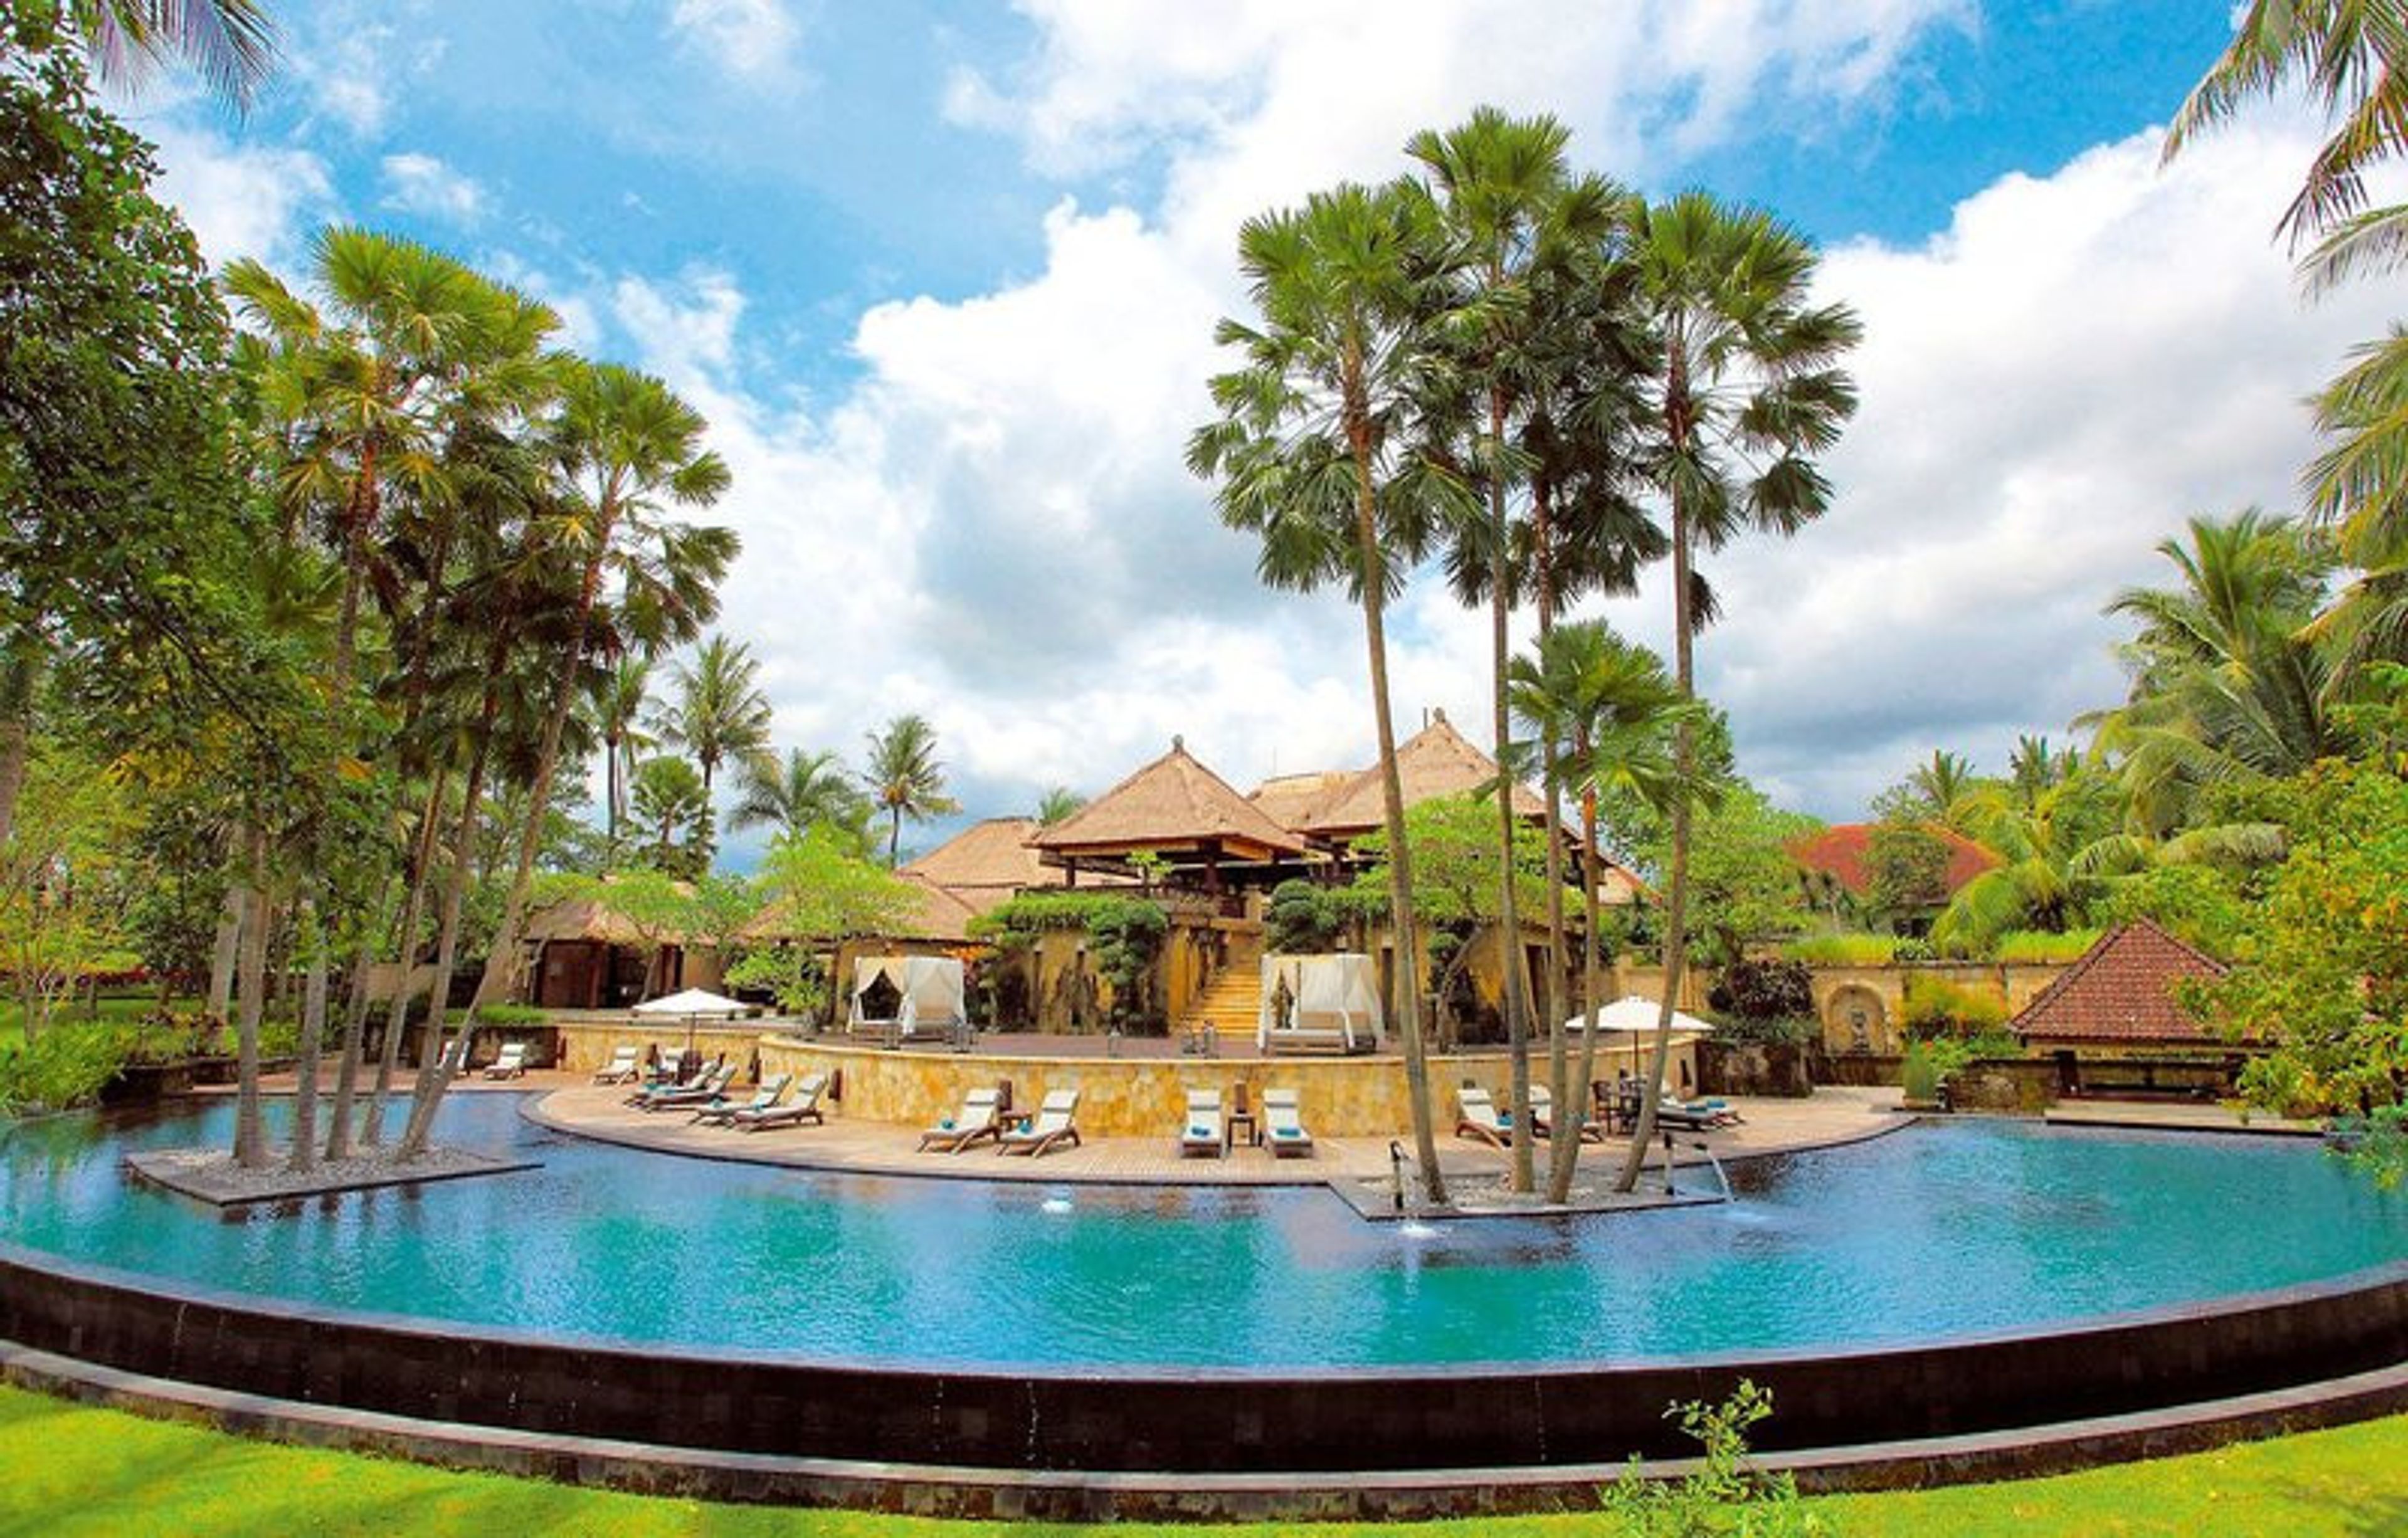 The Ubud Village Resort at Nyuh Kuning